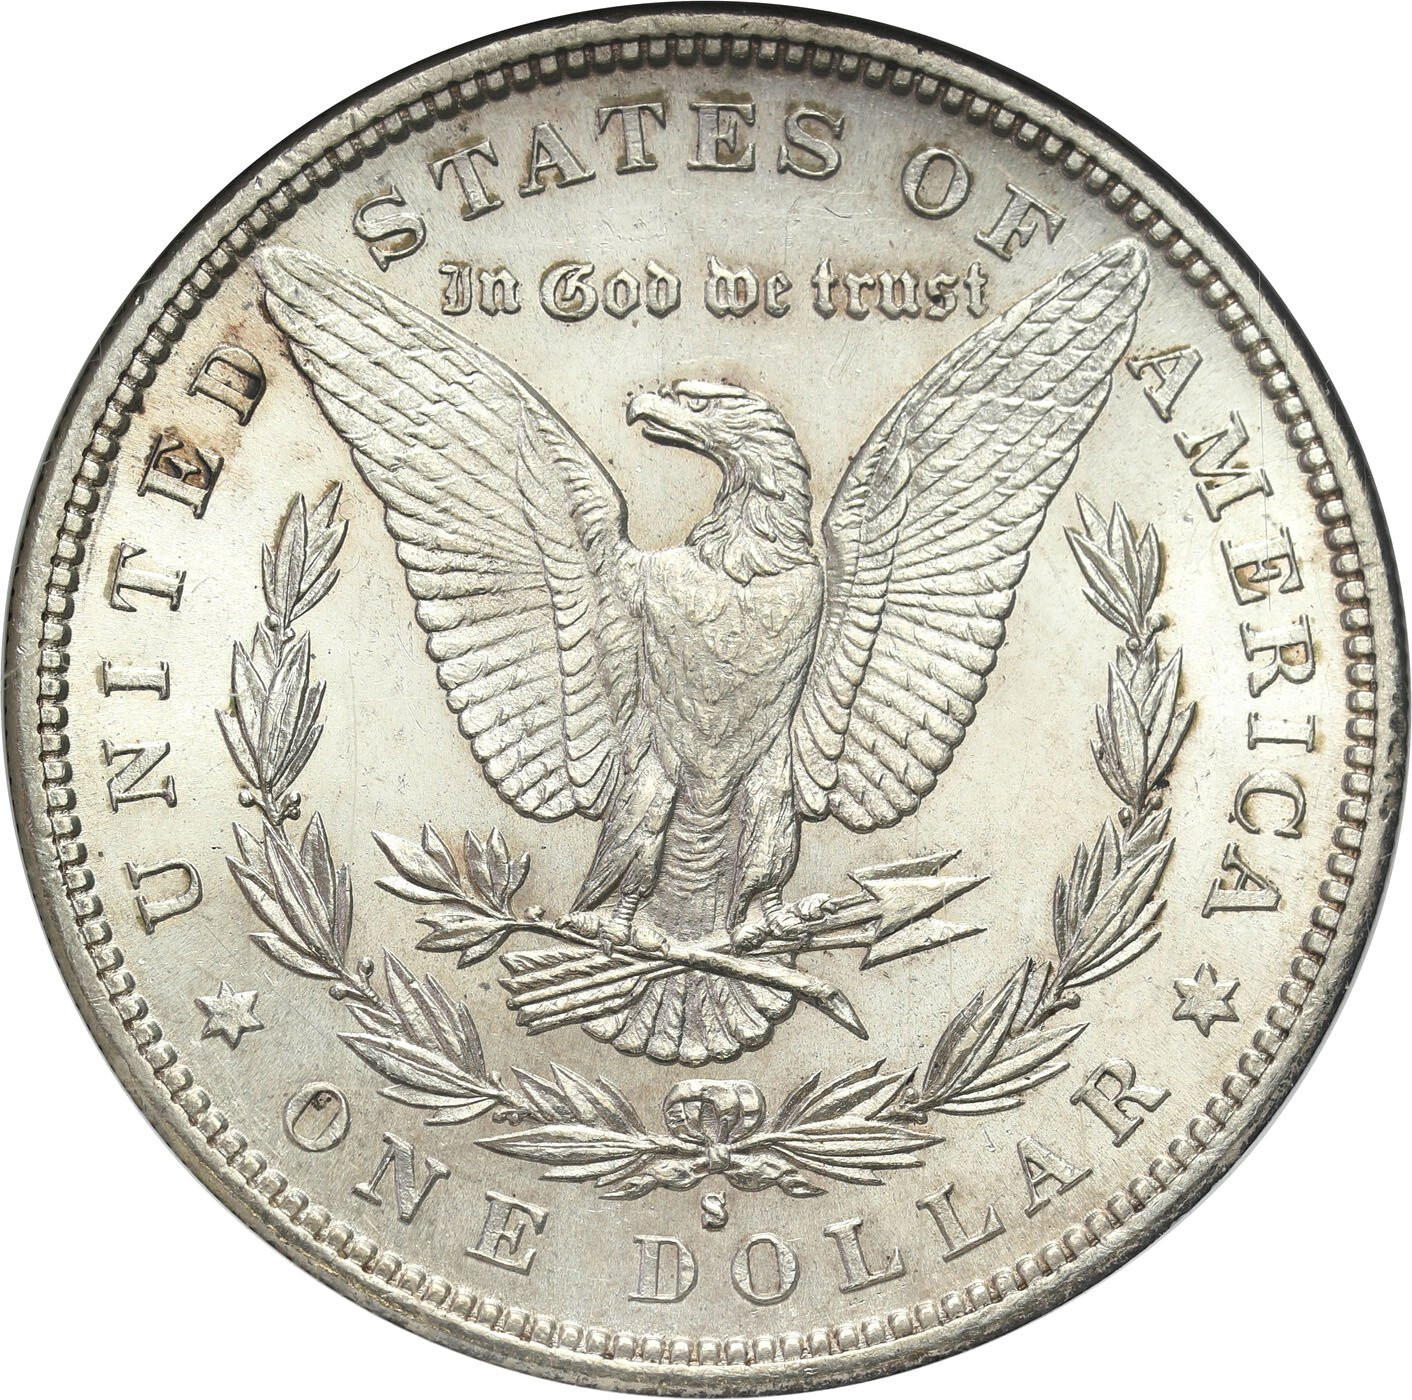 USA. Dolar 1882 S, San Francisco GCN MS66 - PIĘKNE